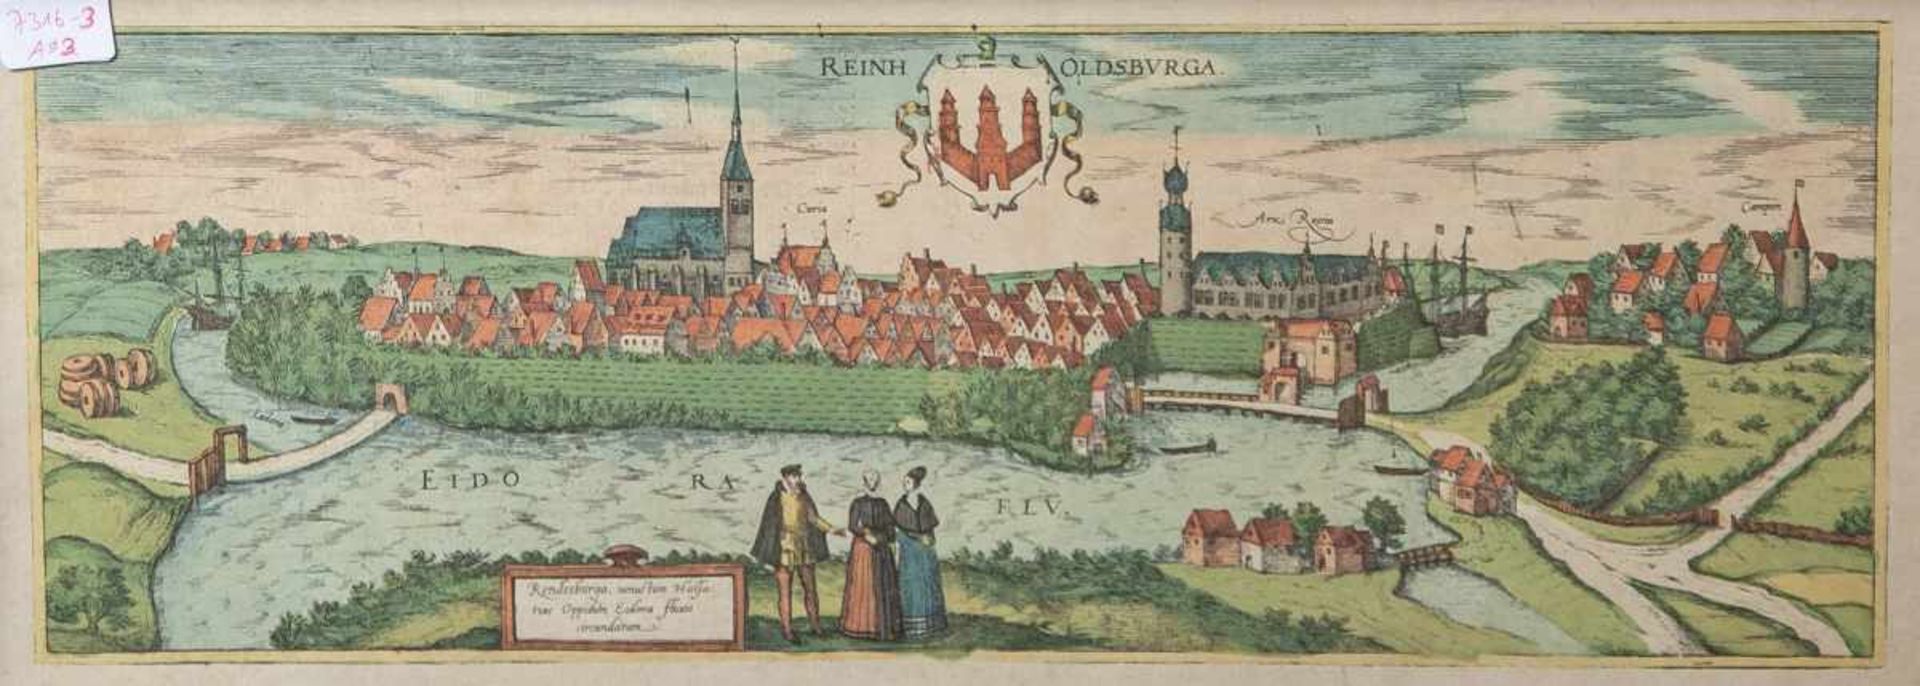 Ansicht von "Reinholdsburga" (um 1600), altkolorierter Kupferstich, ca. 20 x 52 cm, hinterGlas